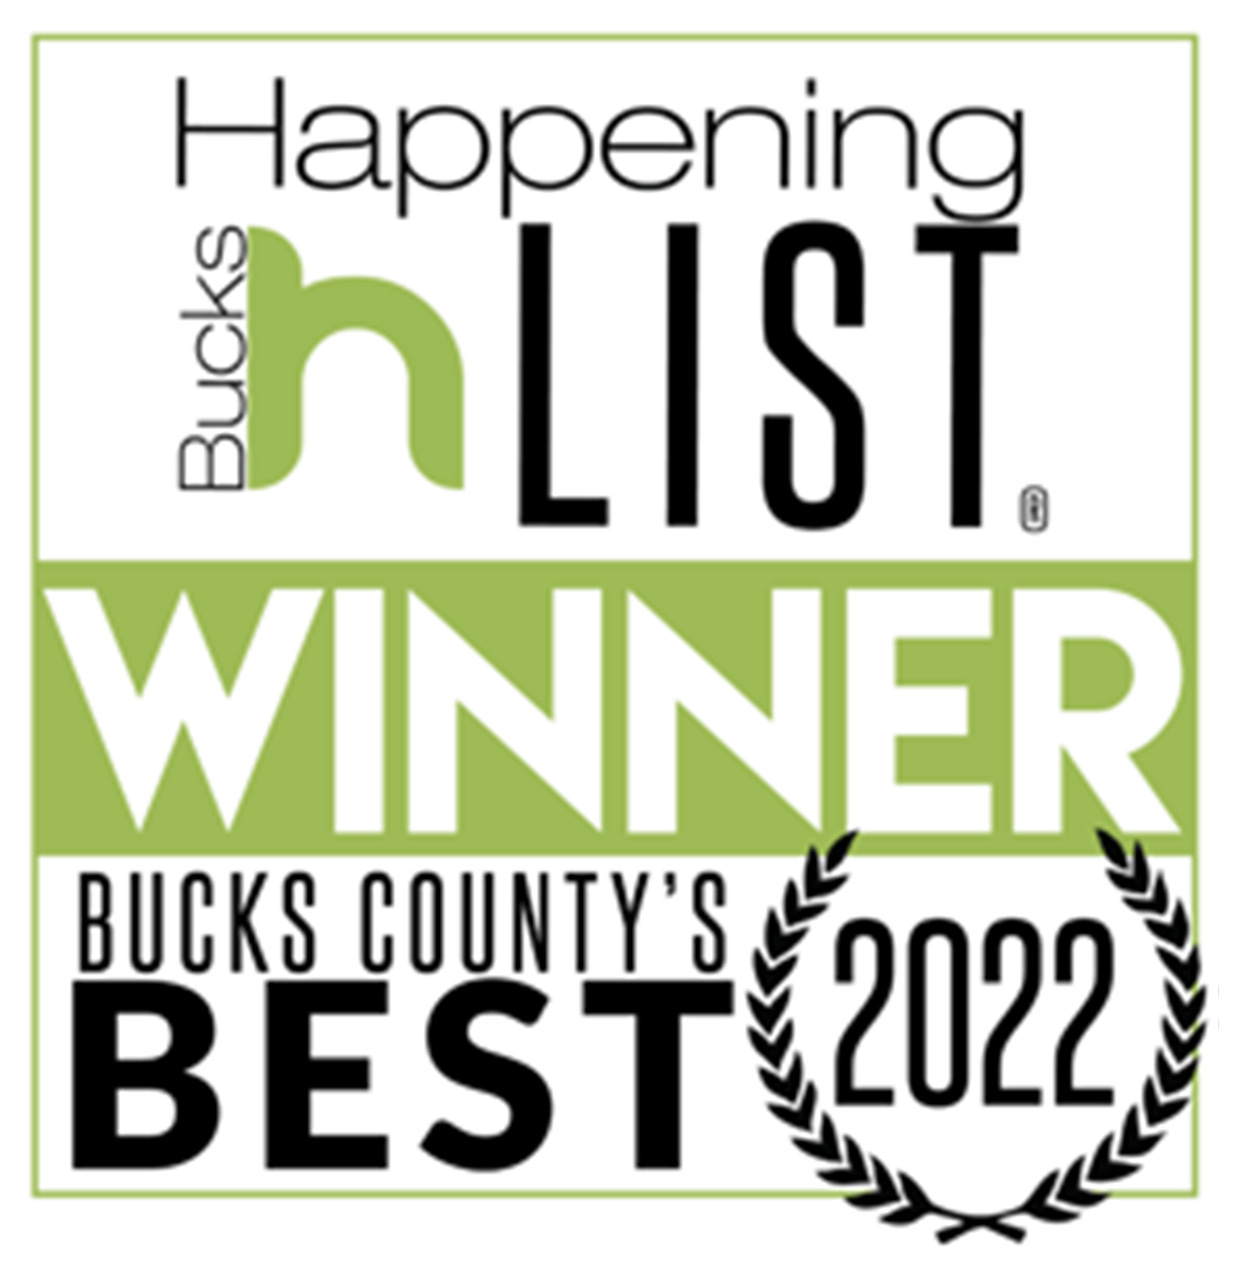 Bucks County's Best Winner for 2022 Badge